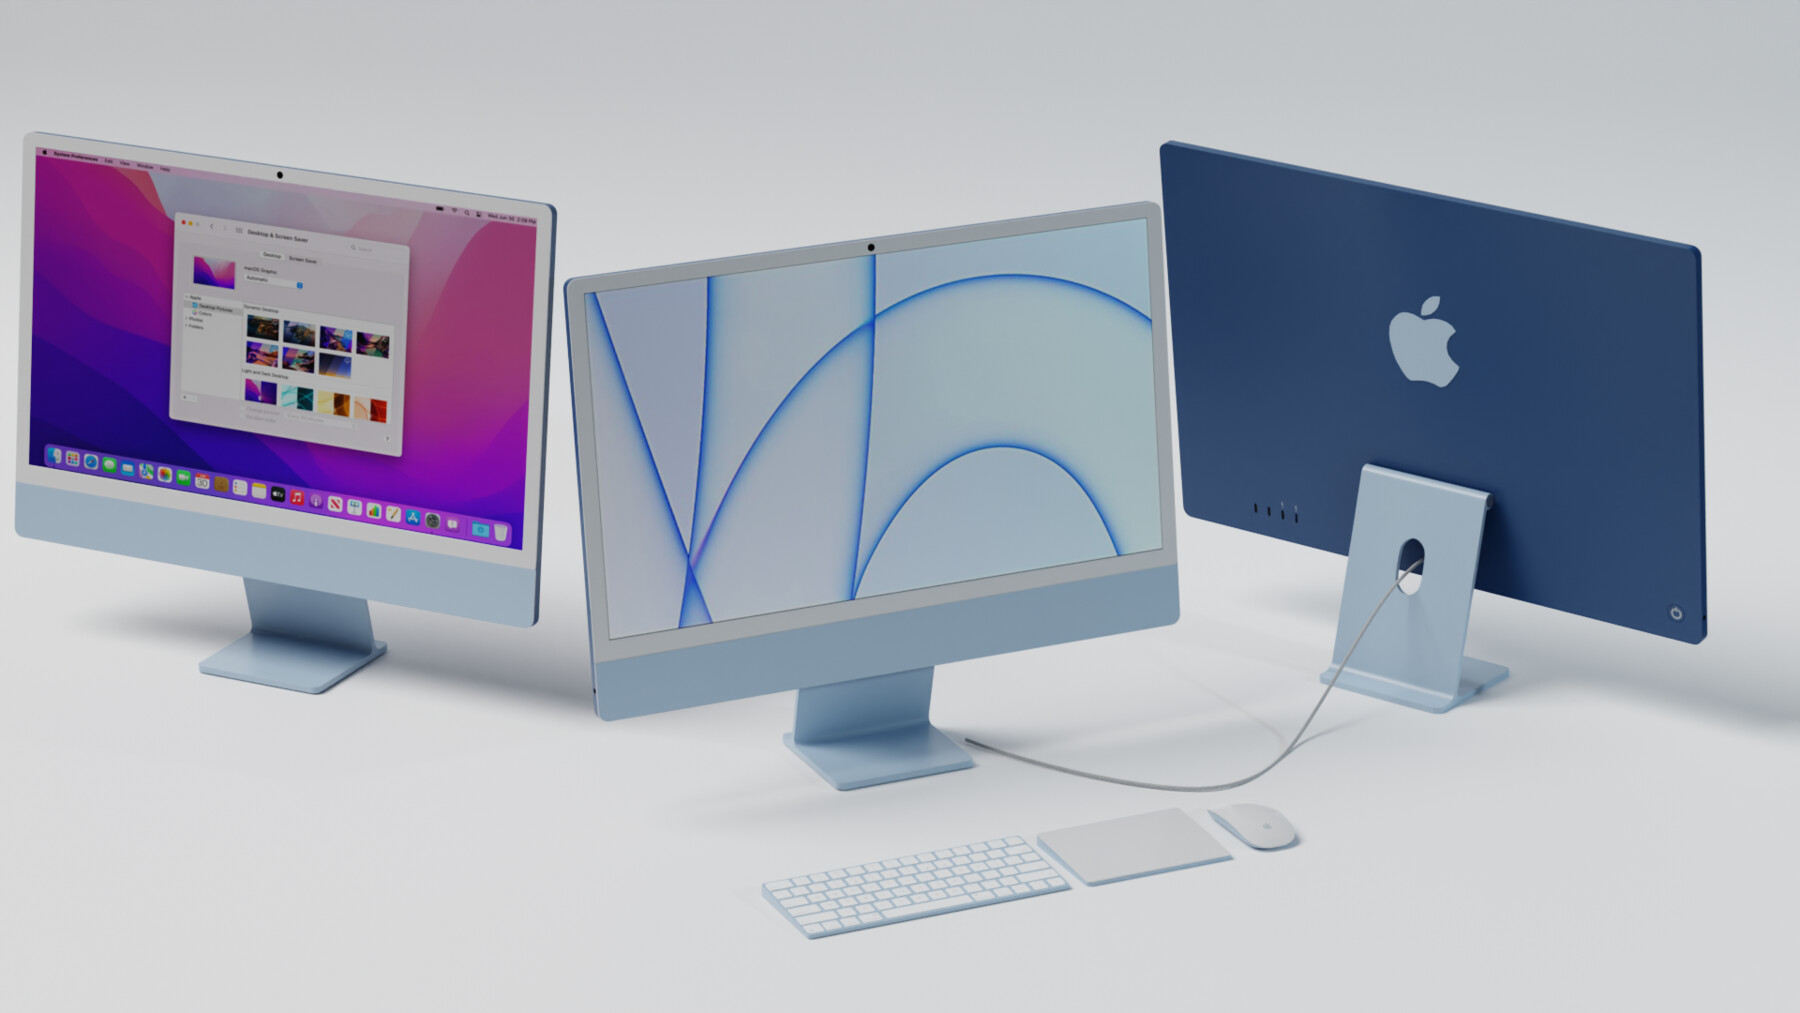 Apple iMac 21.5 - MacOs (Clavier & souris Apple inclus) - Déclassé